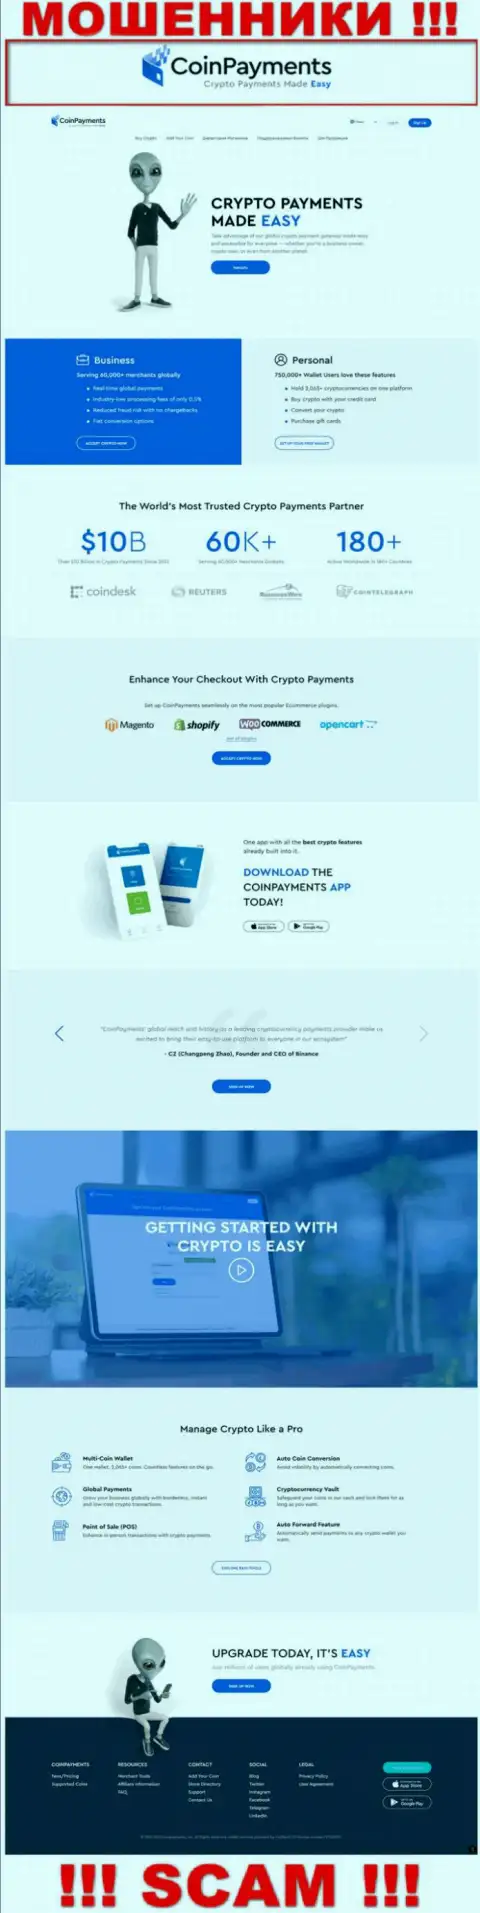 CoinPayments Net - web-портал компании Coin Payments, типичная страничка мошенников